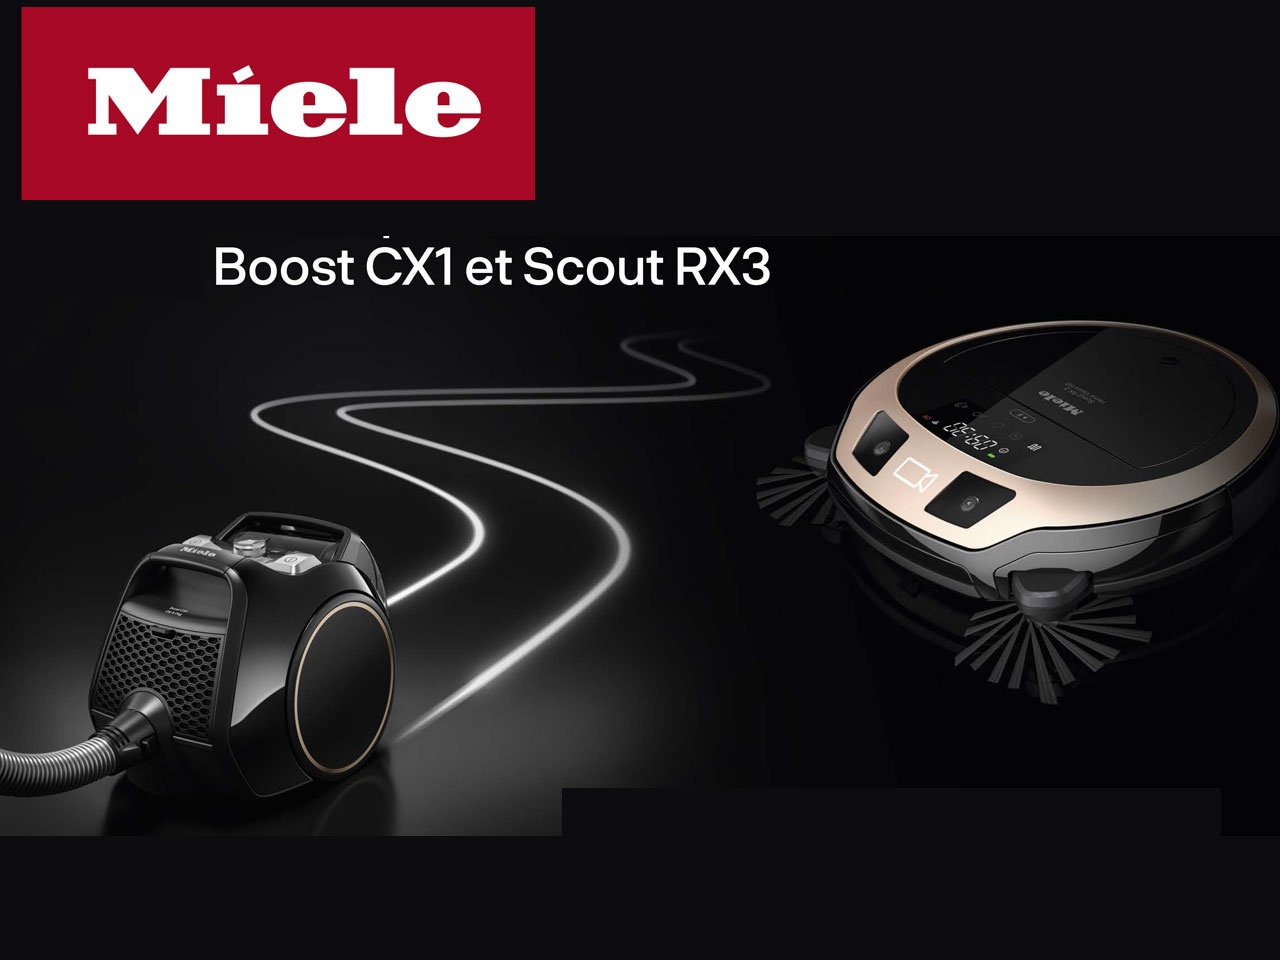 MIELE présente deux nouveaux aspirateurs : Boost CX1 et Scout RX3